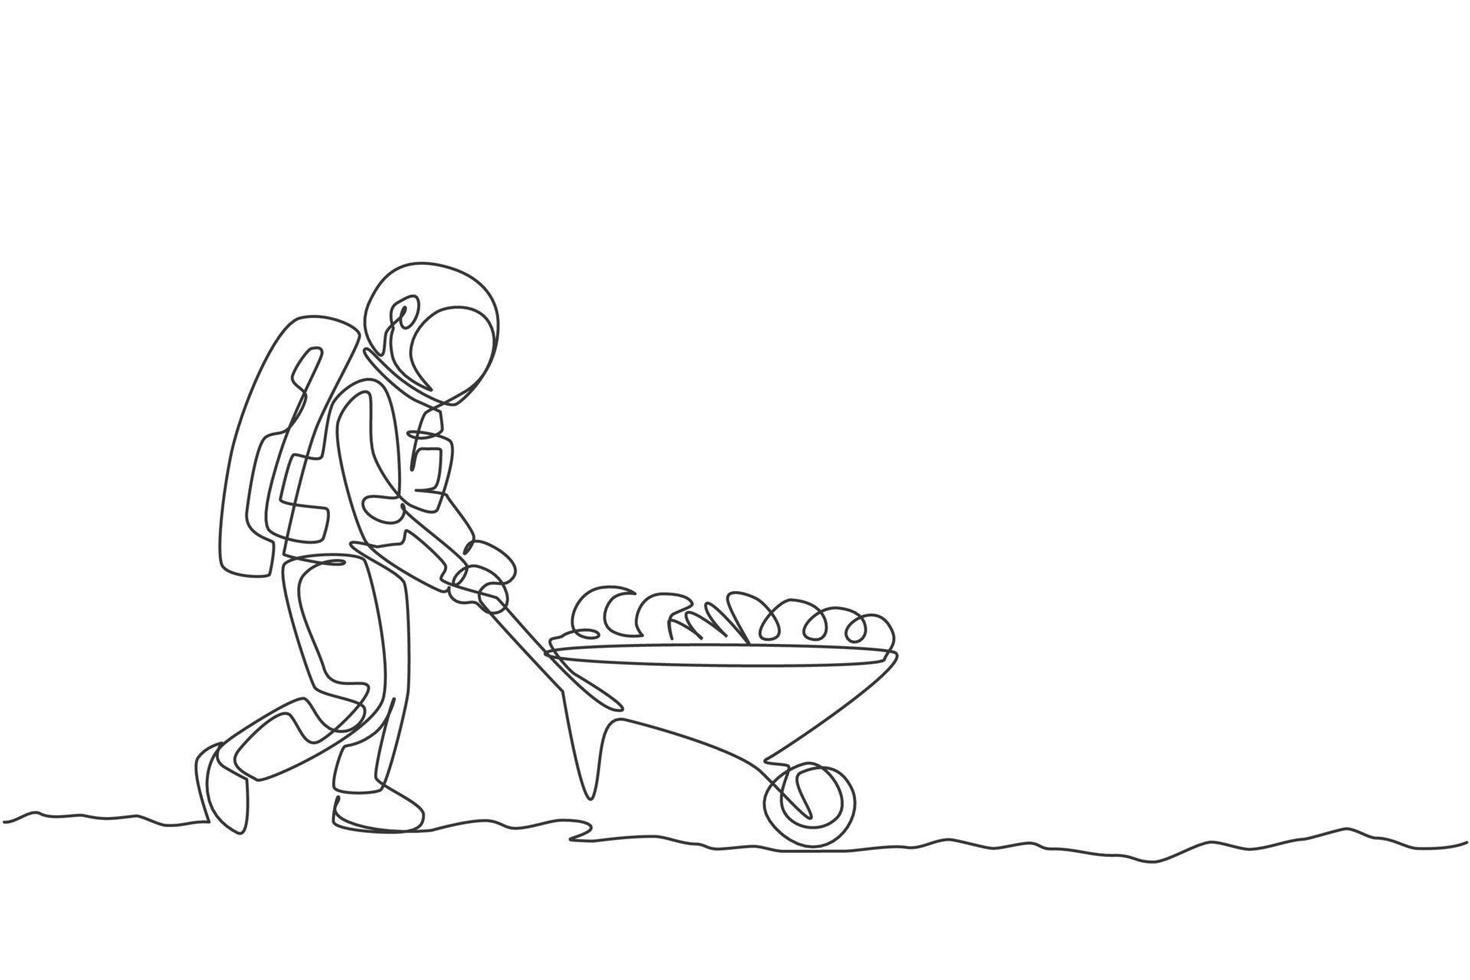 un seul dessin d'astronaute poussant une brouette pleine de fruits et légumes dans l'illustration vectorielle de la surface de la lune. concept d'agriculture spatiale. conception de dessin de ligne continue moderne vecteur